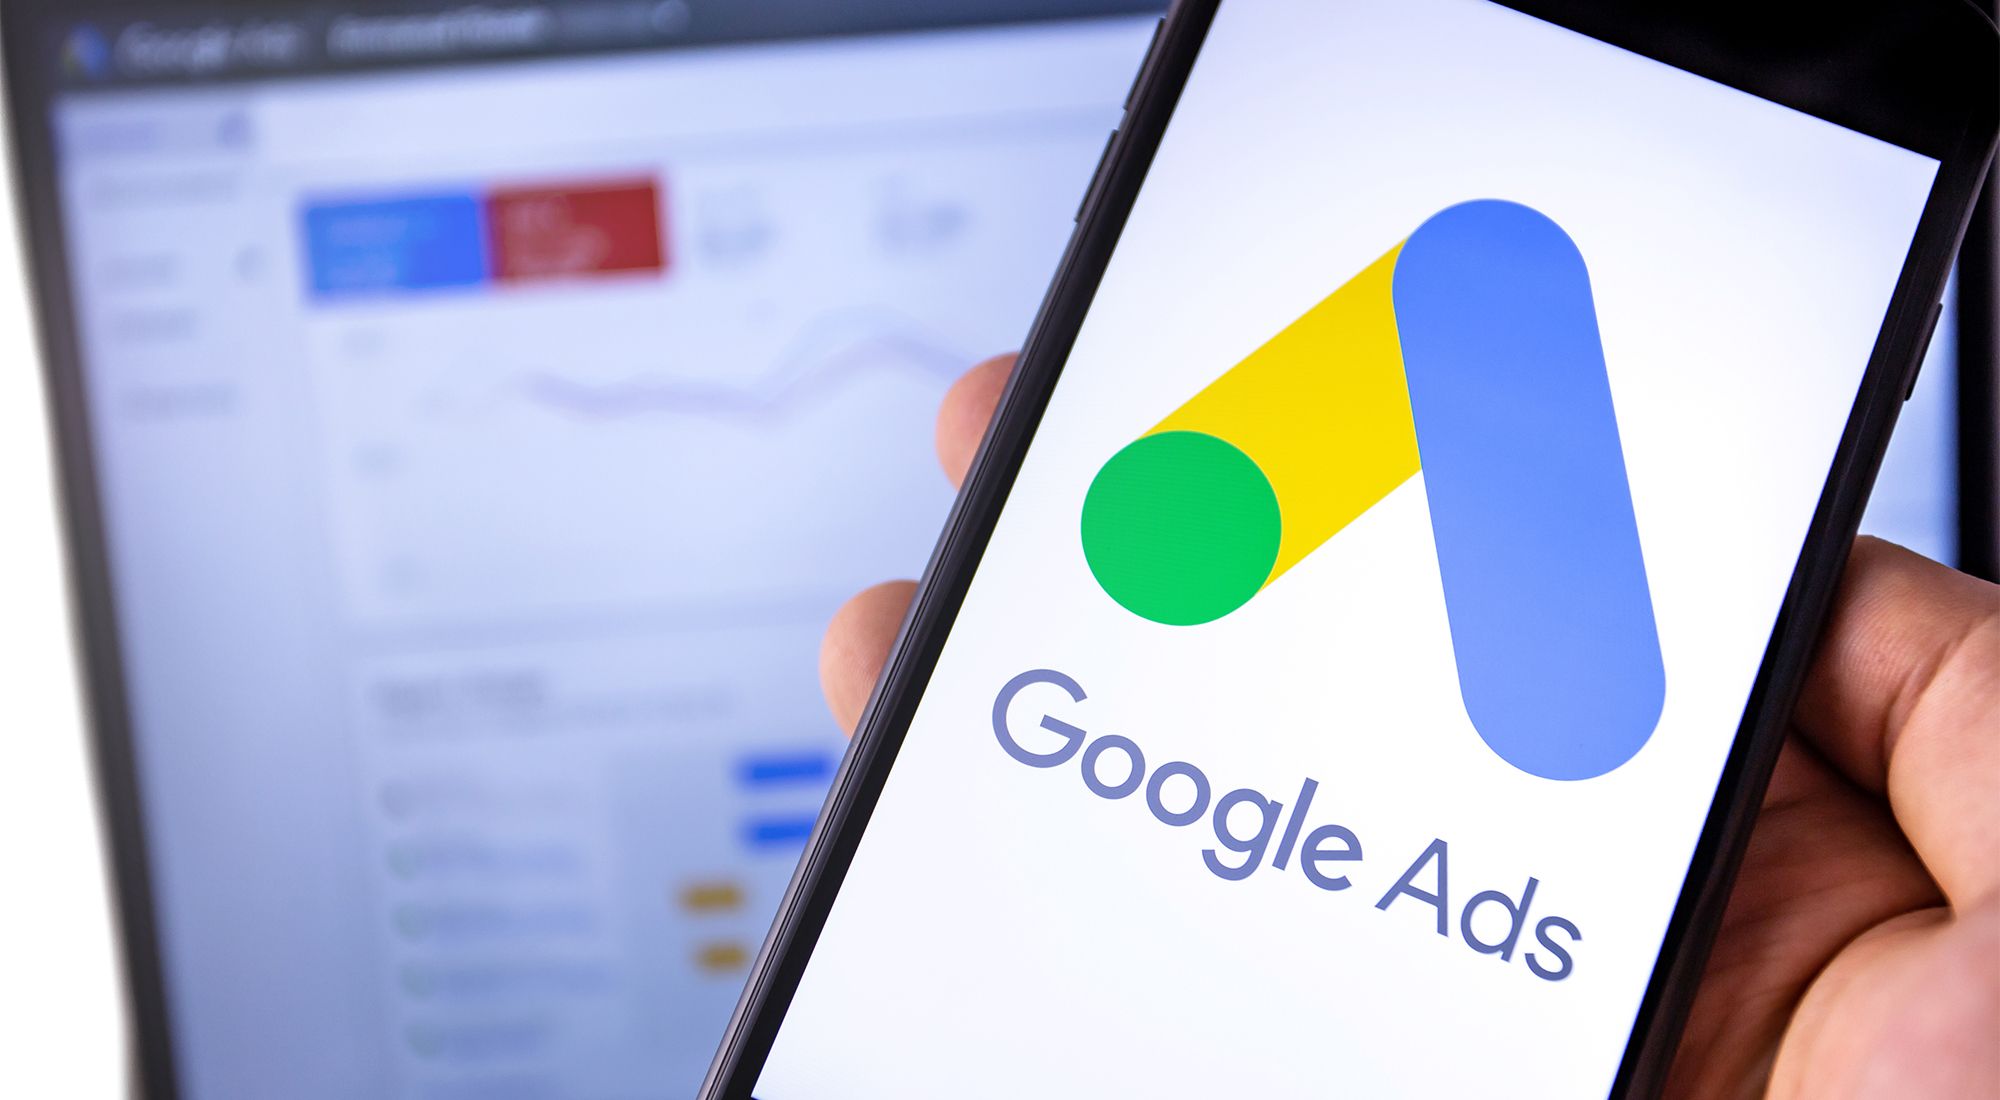 Image of the Google Ads platform.